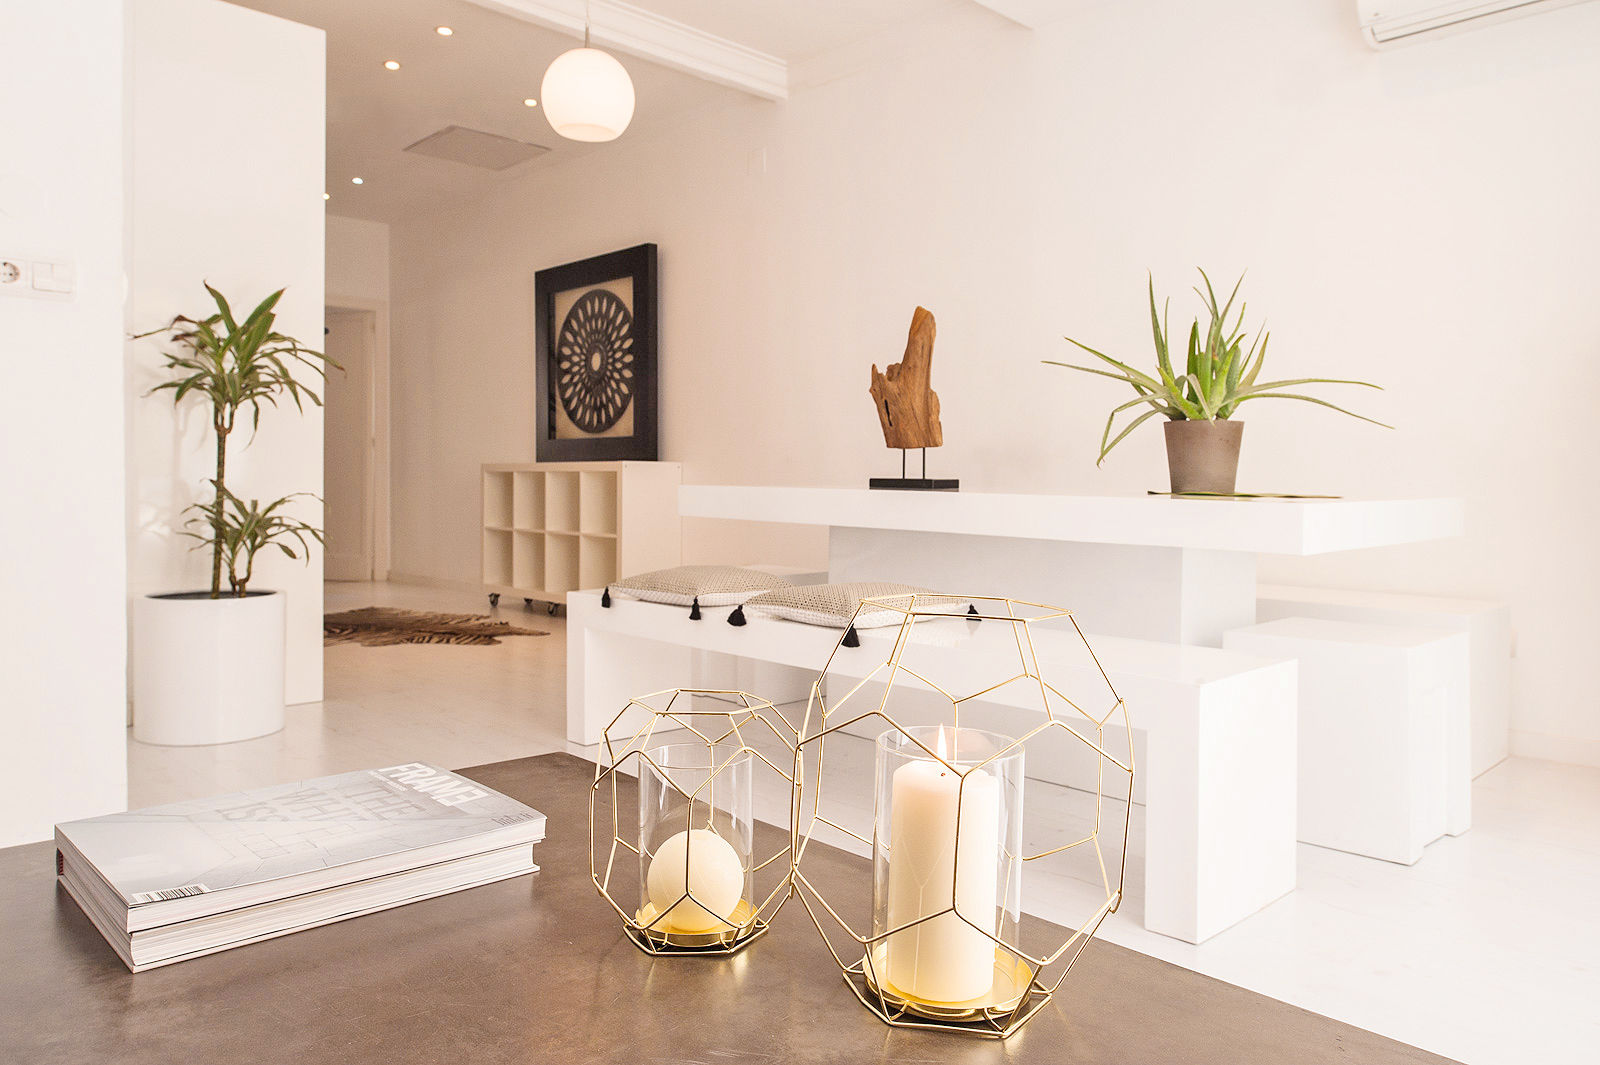 Home Staging Como Vender una Vivienda Eficazmente, Markham Stagers Markham Stagers Salas de estar minimalistas